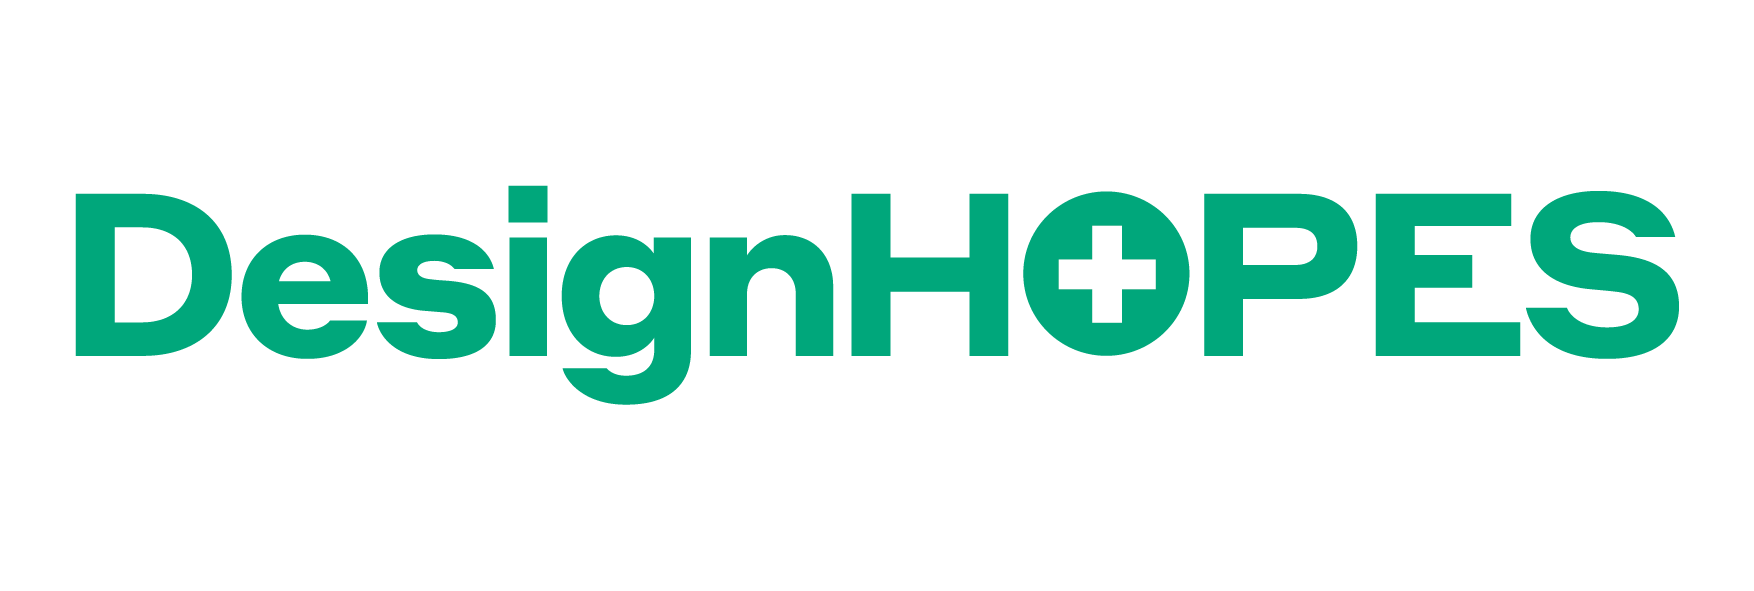 Design HOPES logo, green text